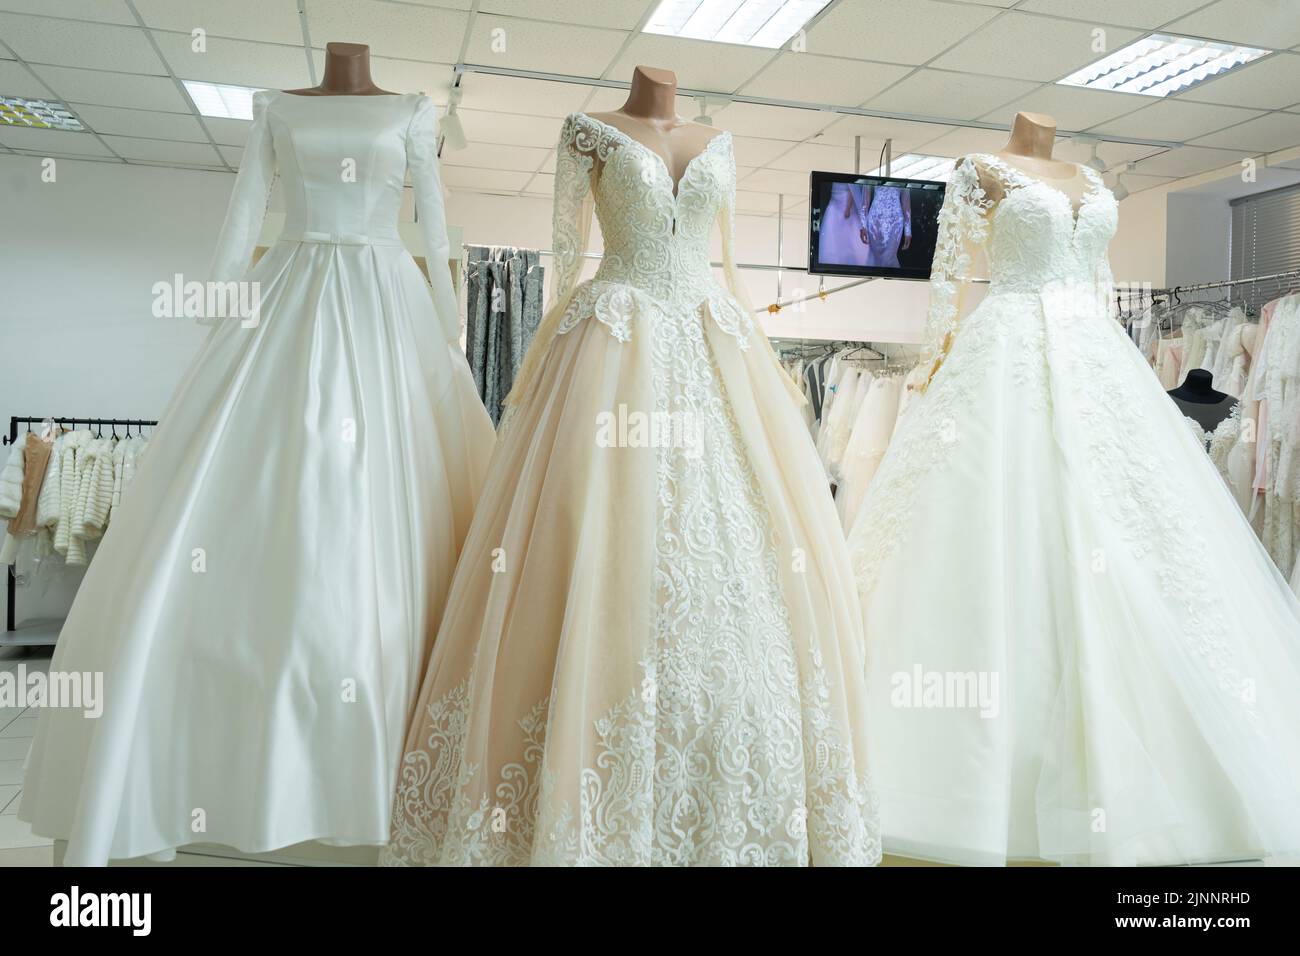 Drei schicke Brautkleider auf Schaufensterpuppen. Drei verschiedene Modelle von schönen Brautkleider Stockfoto